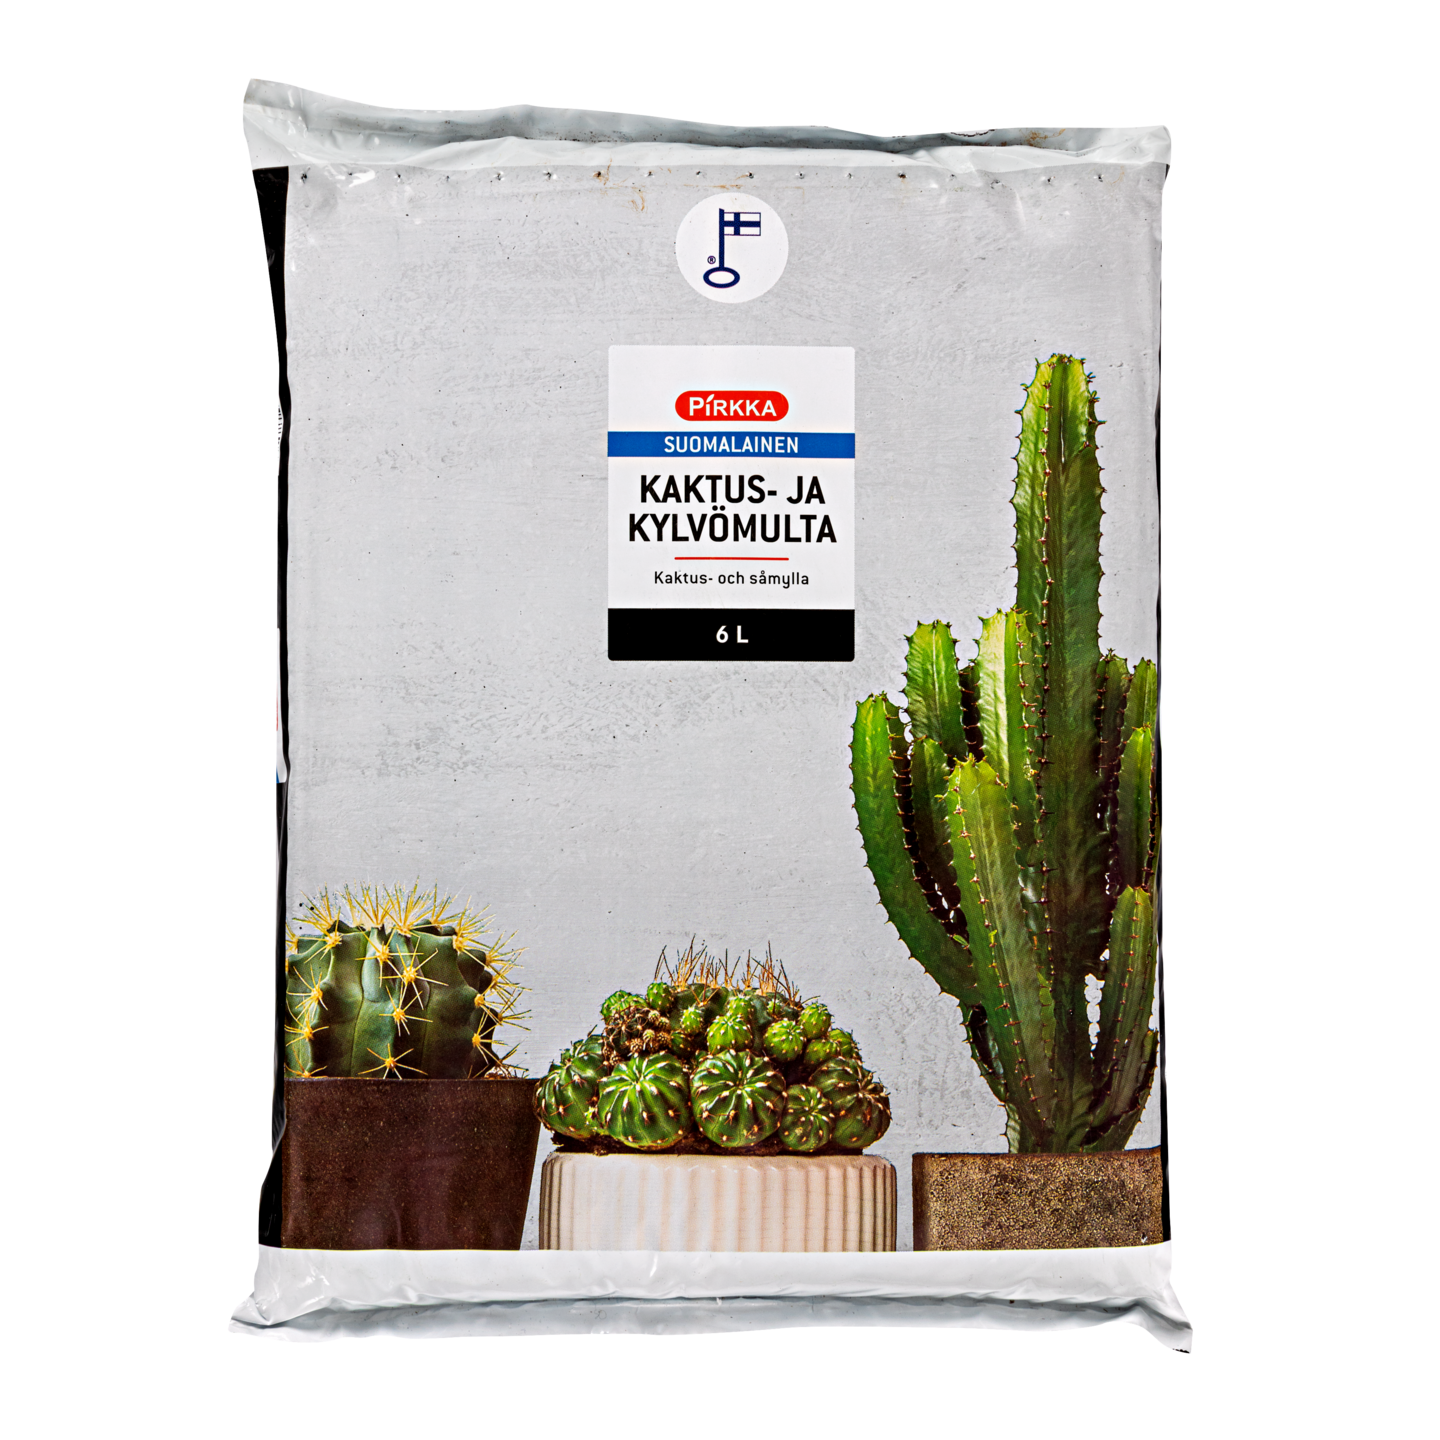 Pirkka kaktus- ja kylvömulta 6 litraa | K-Ruoka Verkkokauppa